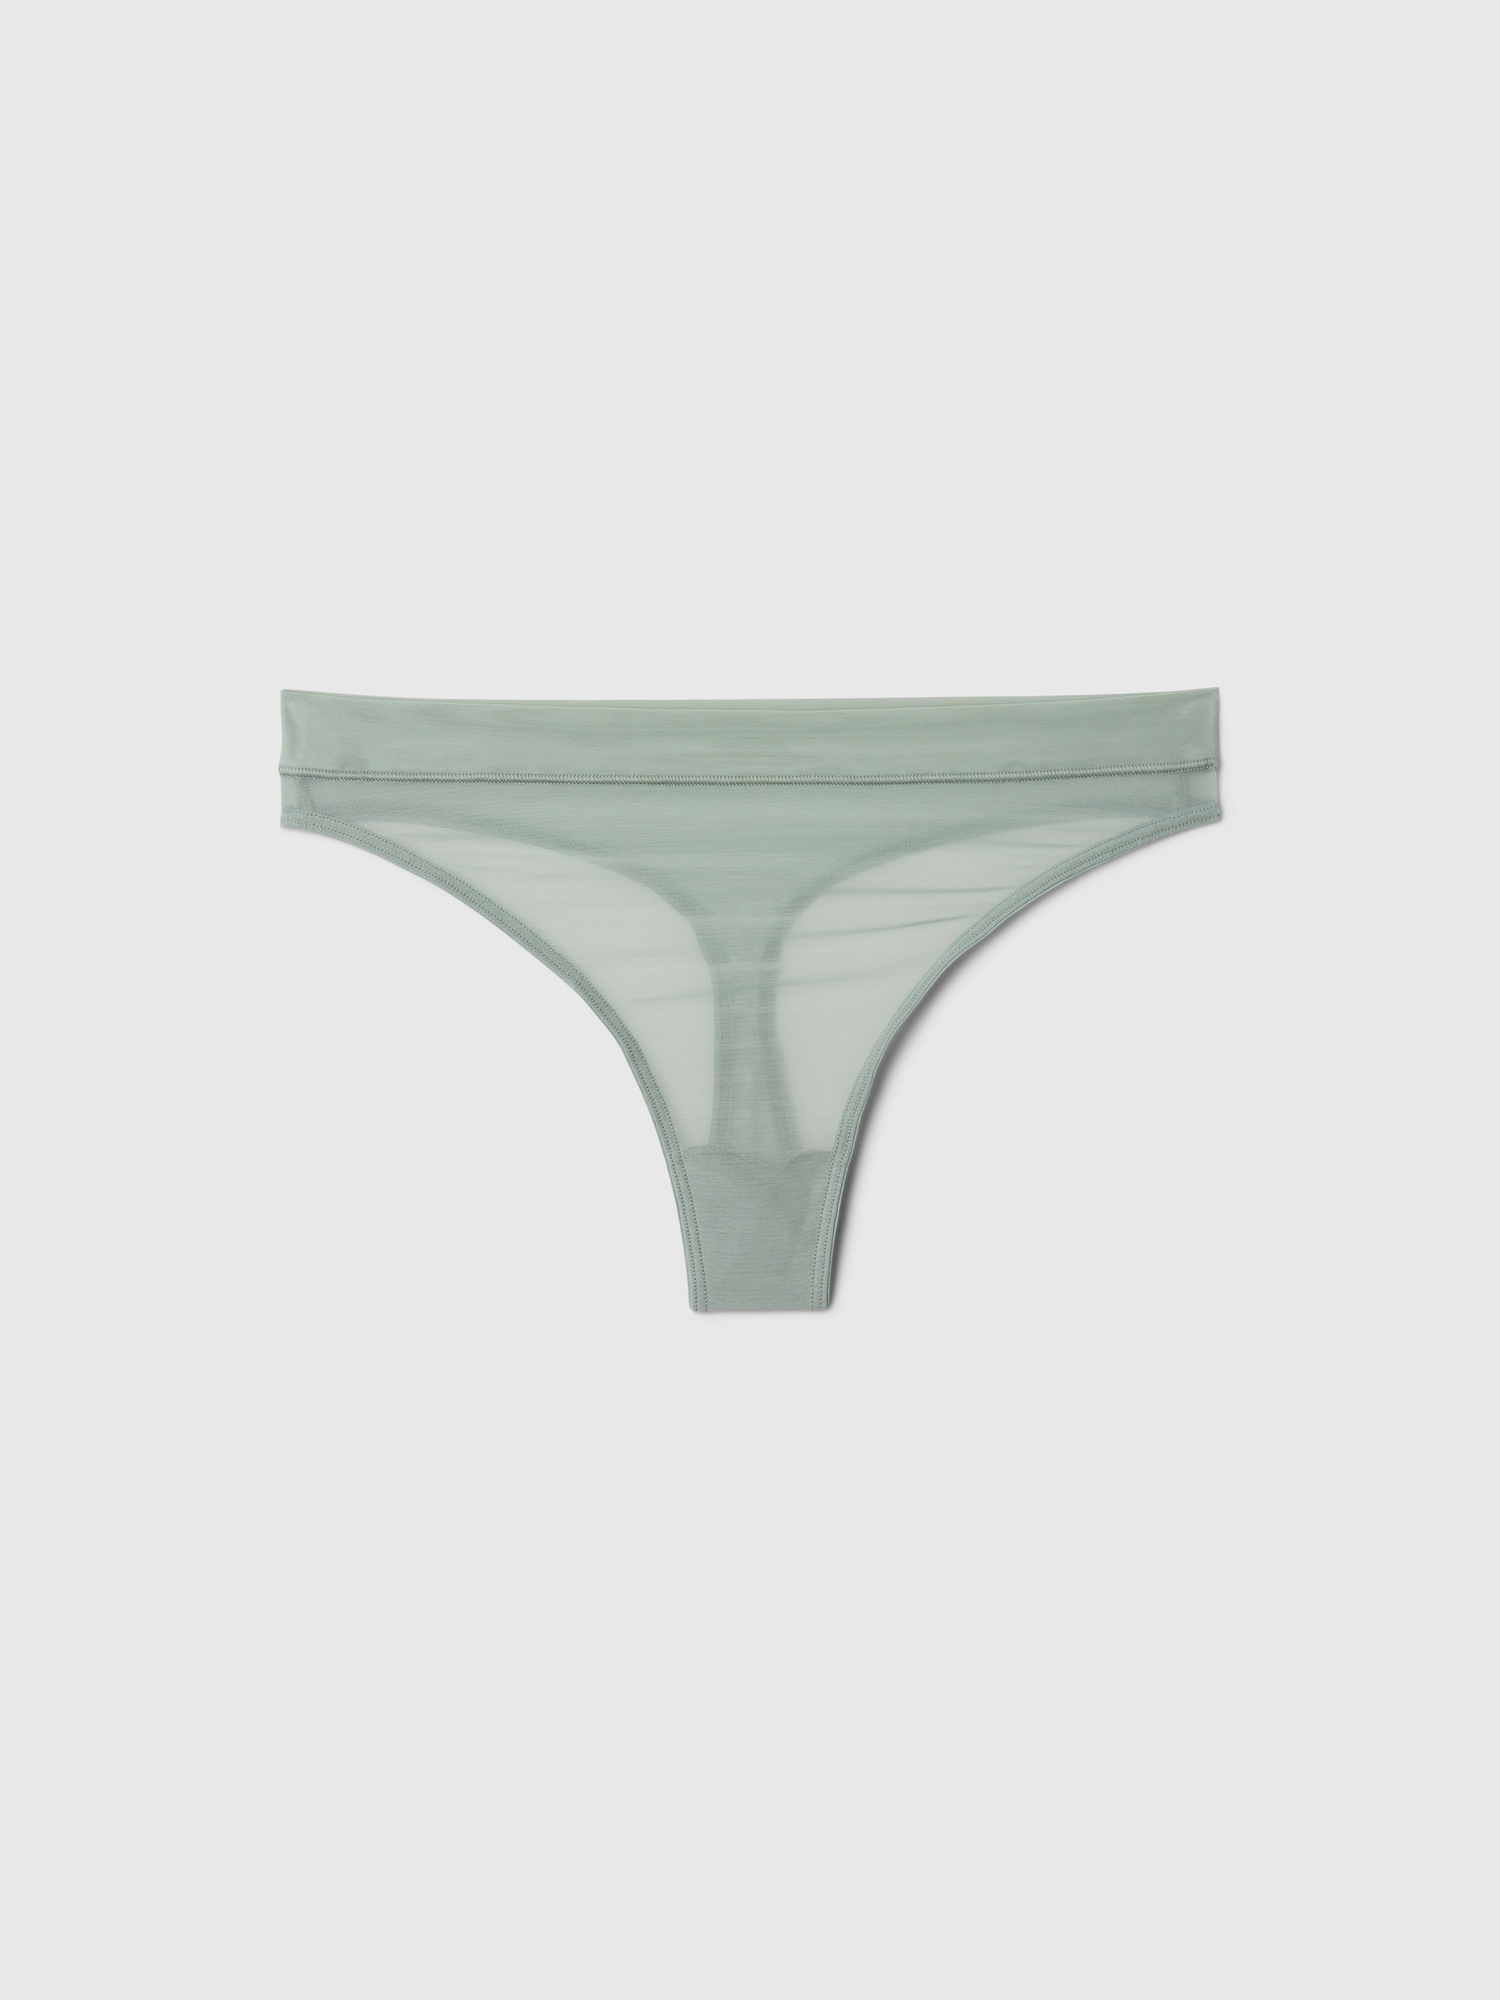 Women's Brief Mesh Clear Lingerie Underwear Panties Thong Kinks /